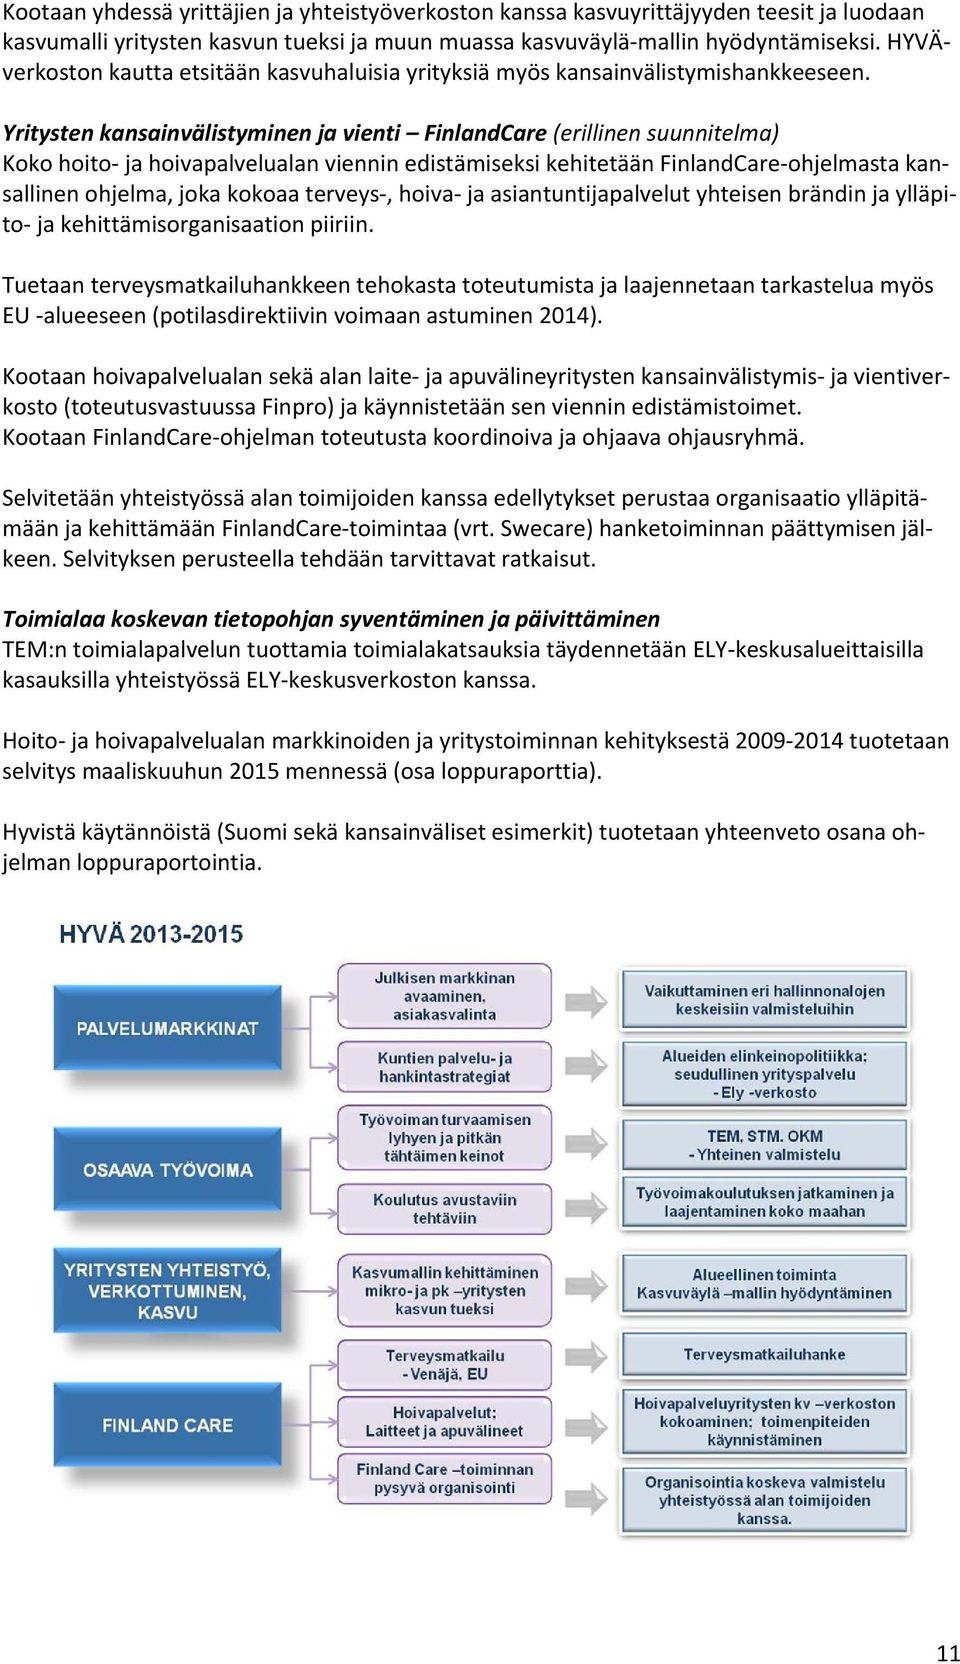 Yritysten kansainvälistyminen ja vienti FinlandCare (erillinen suunnitelma) Koko hoito ja hoivapalvelualan viennin edistämiseksi kehitetään FinlandCare ohjelmasta kansallinen ohjelma, joka kokoaa